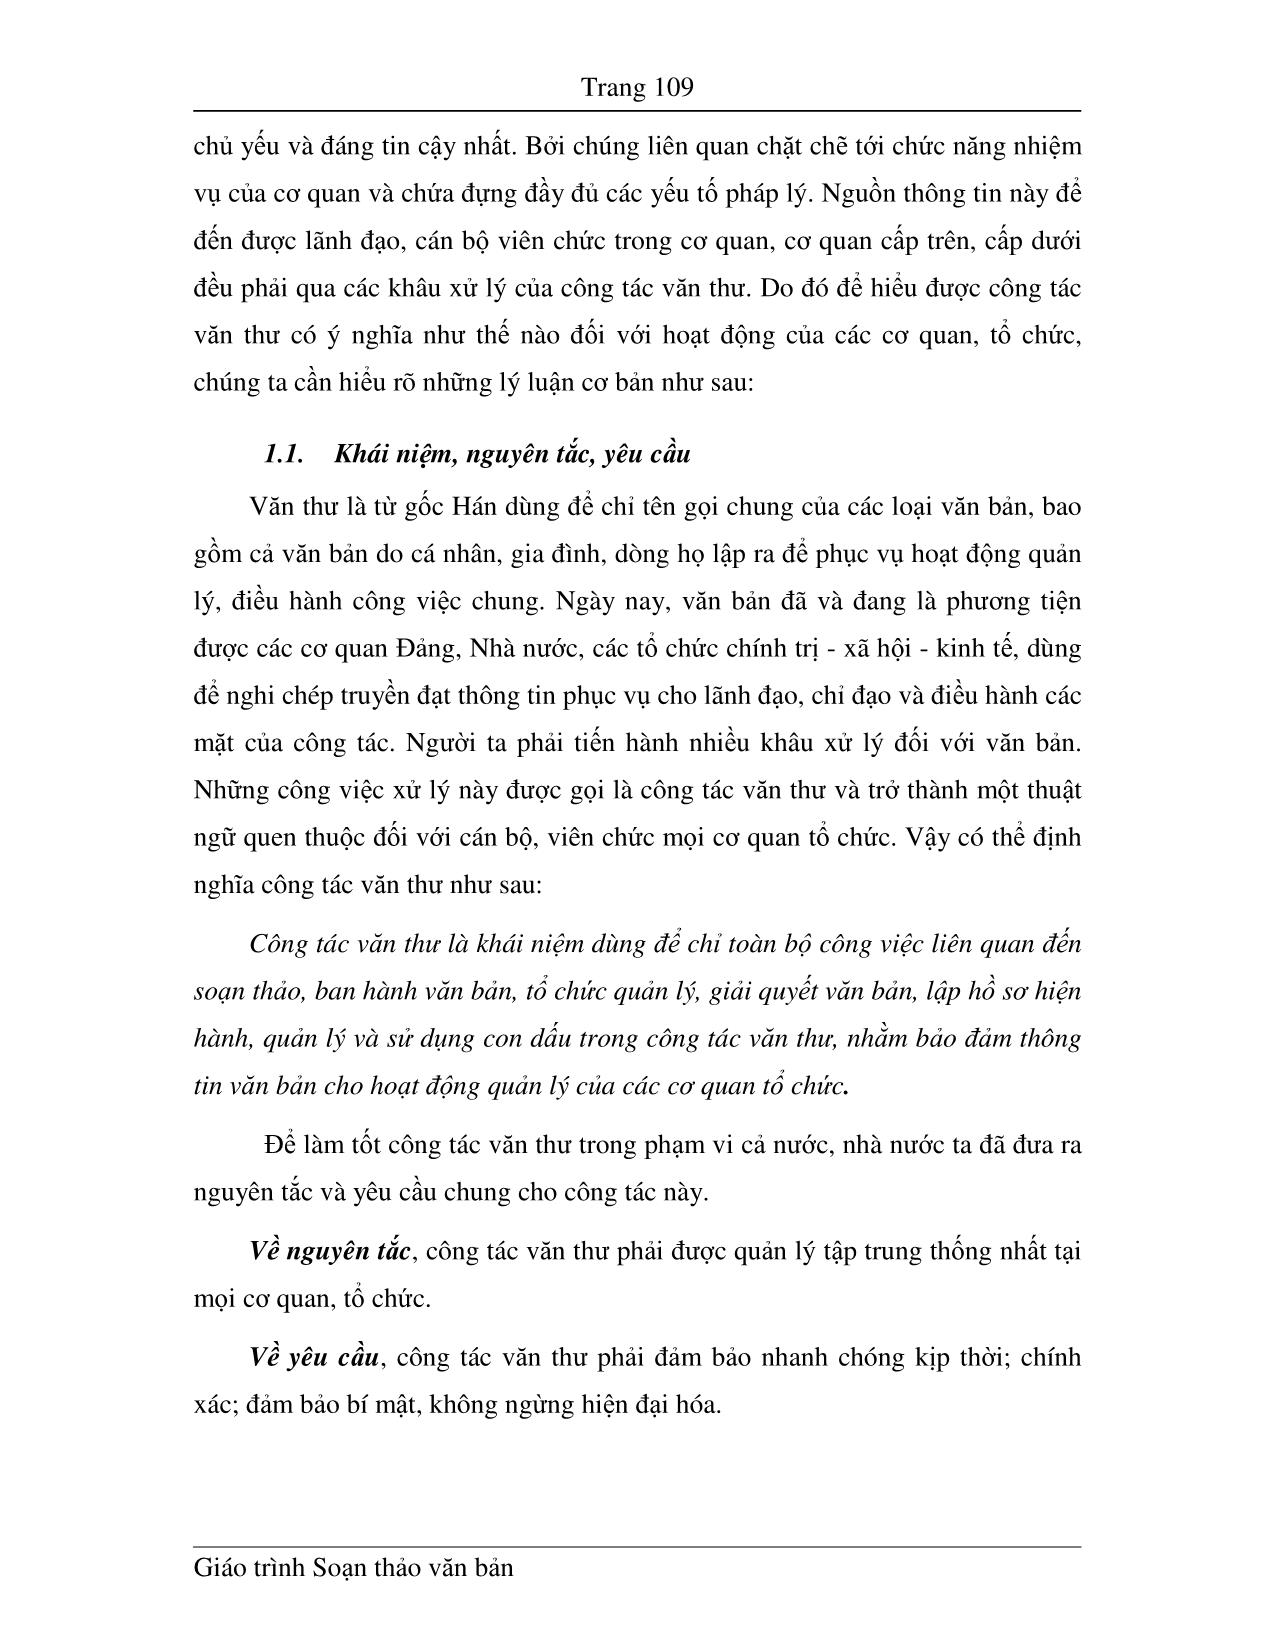 Giáo trình Soạn thảo văn bản (Phần 2) trang 2